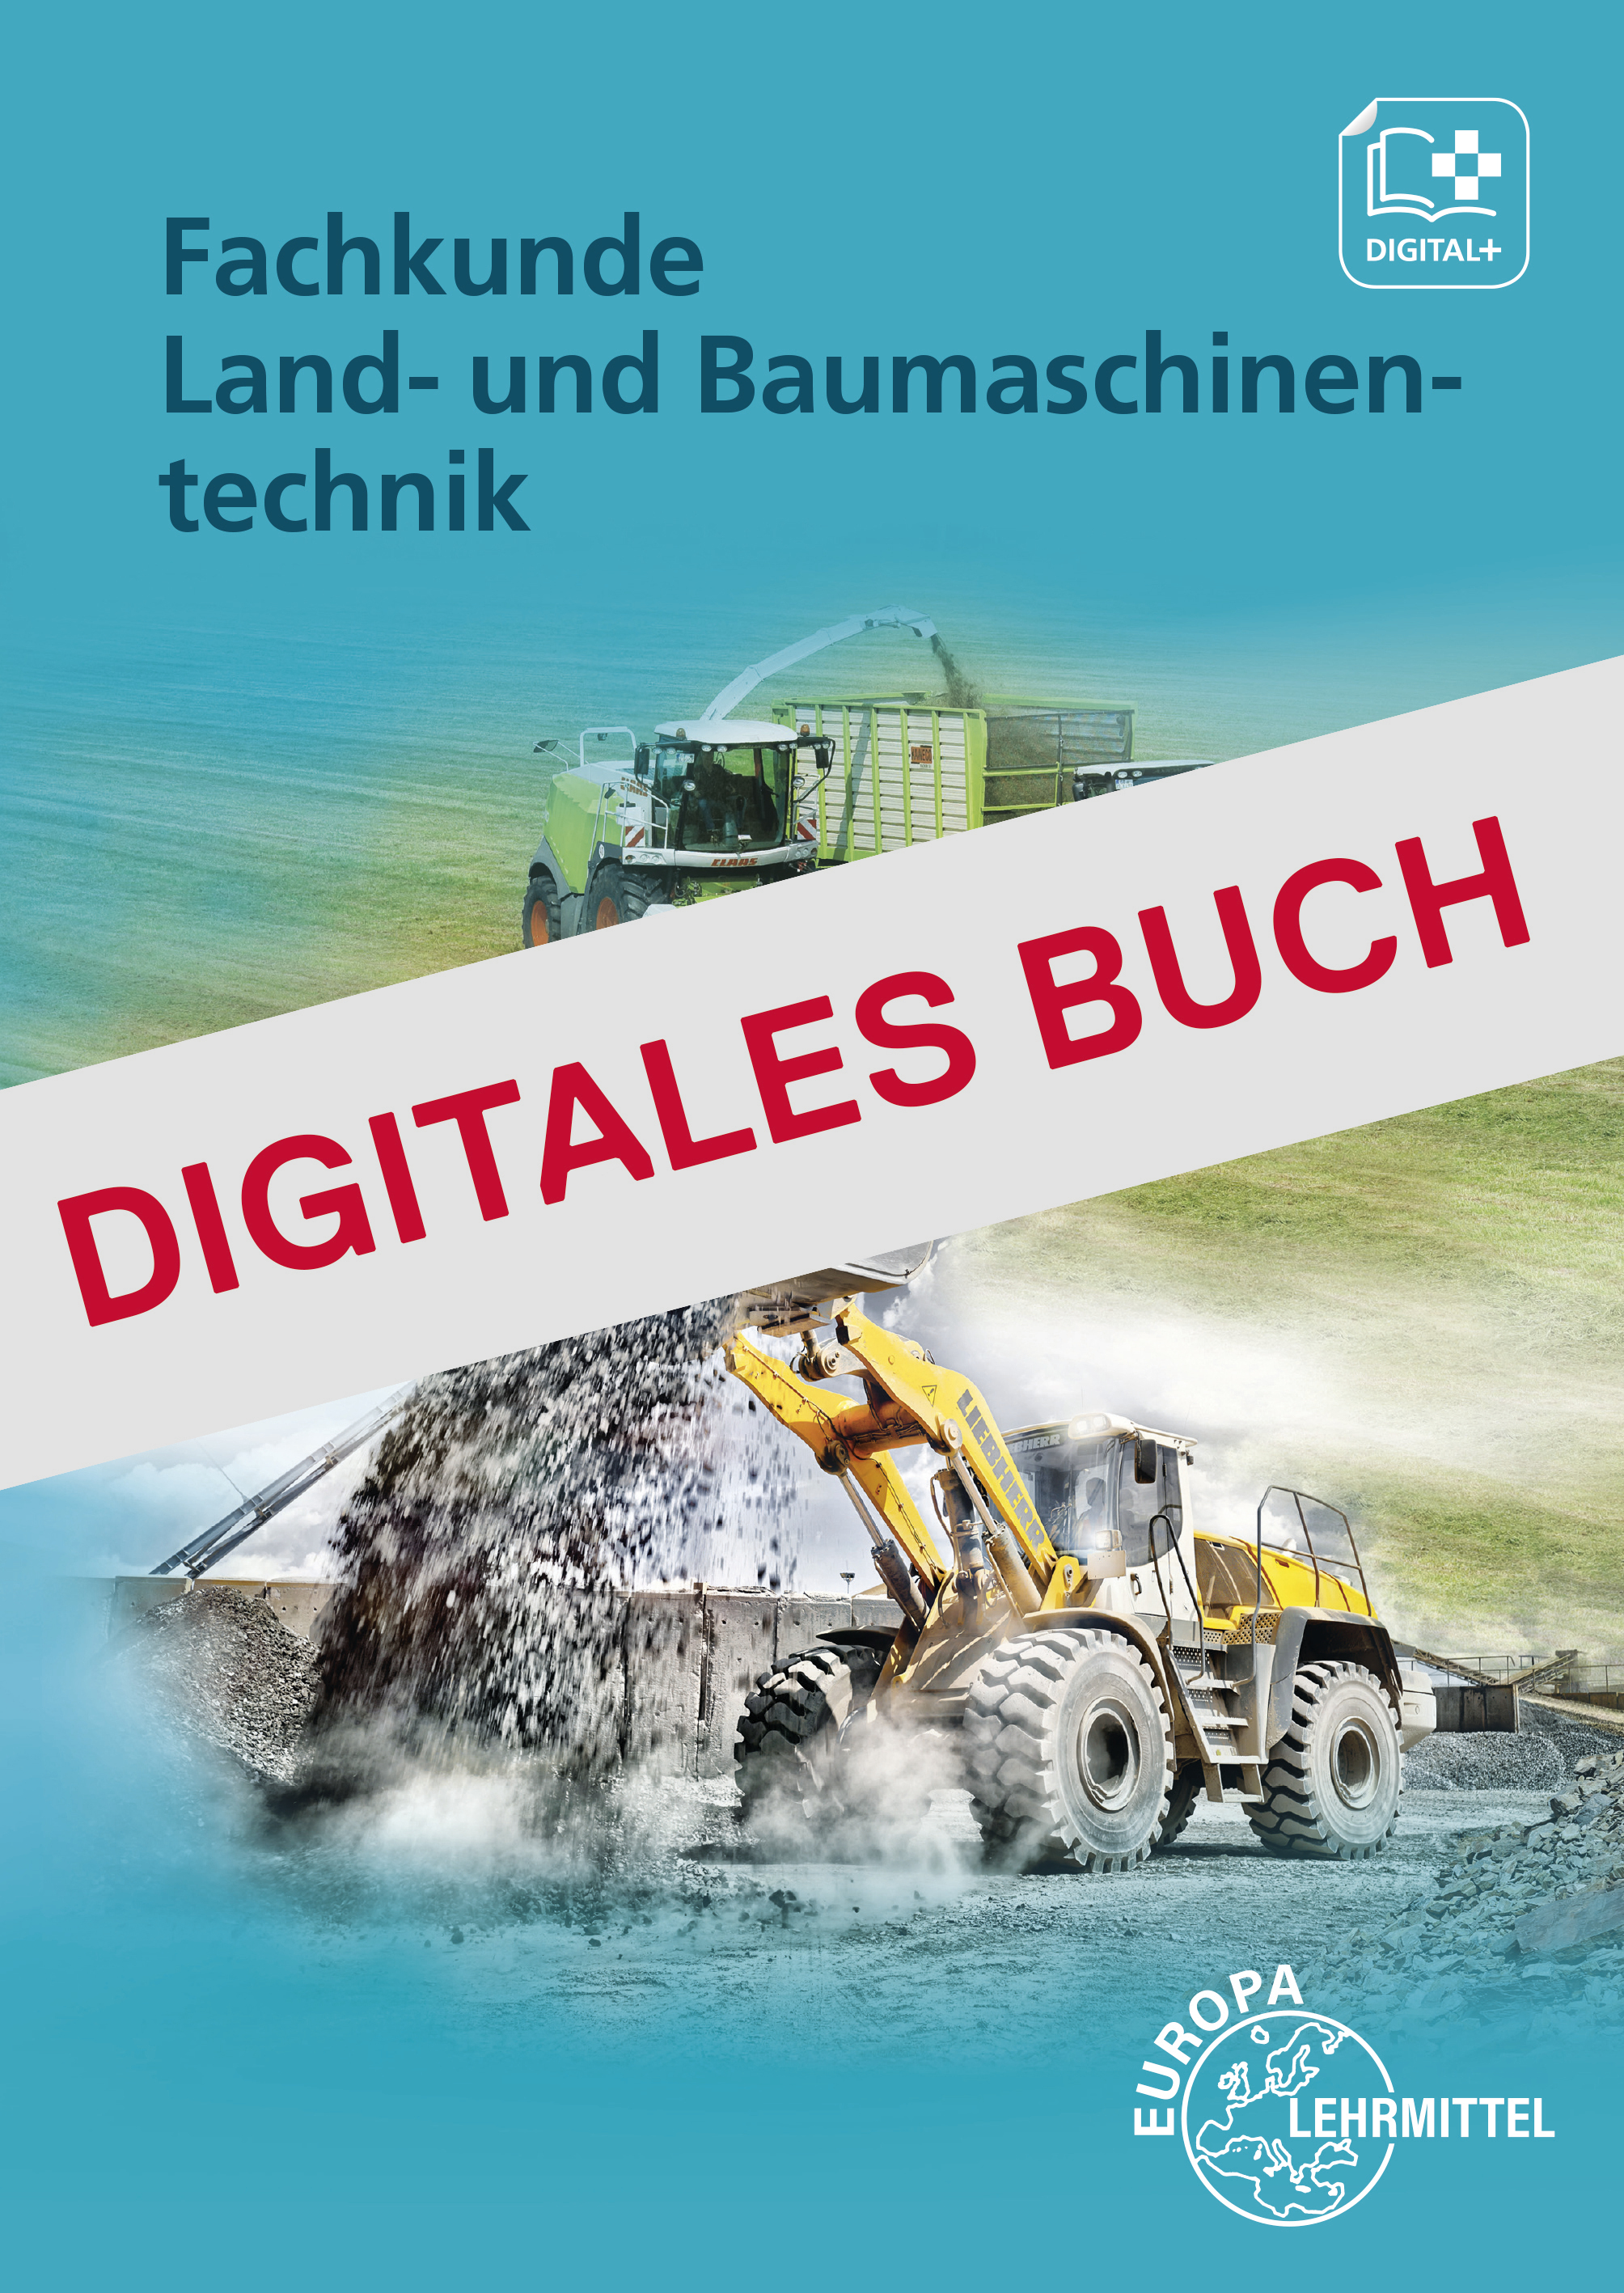 Fachkunde Land- und Baumaschinentechnik - Digitales Buch